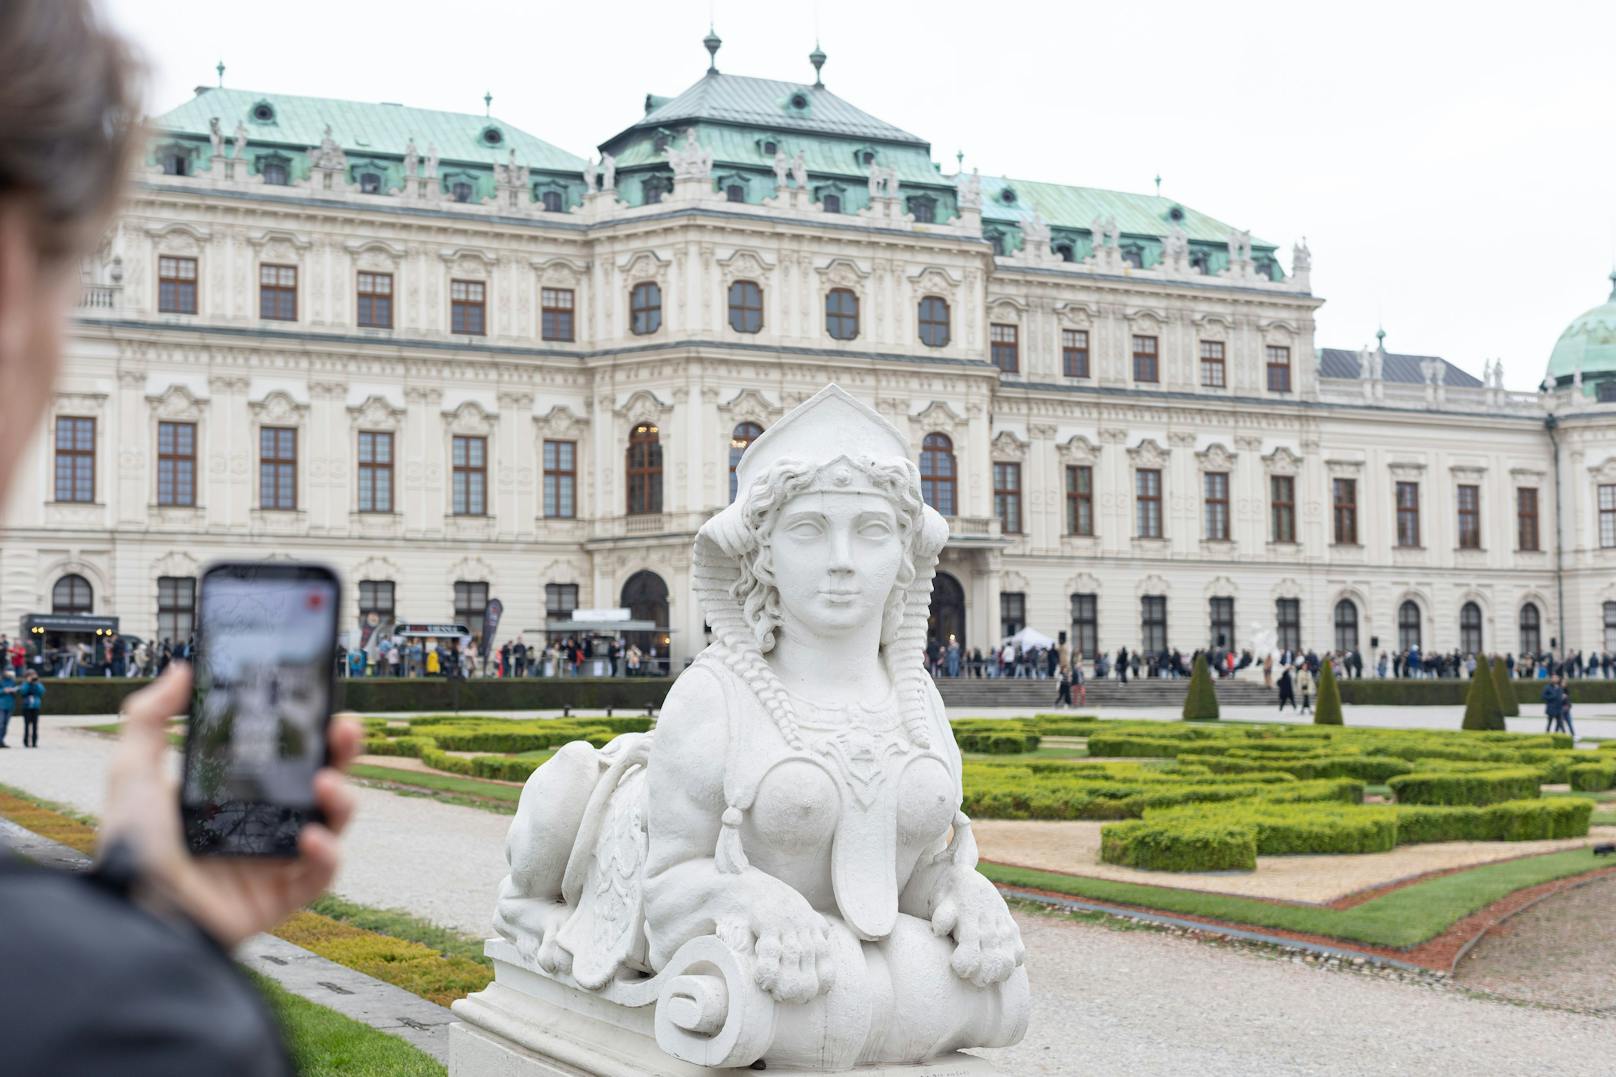 Löwe Roco, der Lemur Neo, die Gazelle Rena, das Schaf Pop, der Strauß Dada und das Stachelschwein Flux tummeln sich nun im Schlossgarten des Belvedere in Wien.